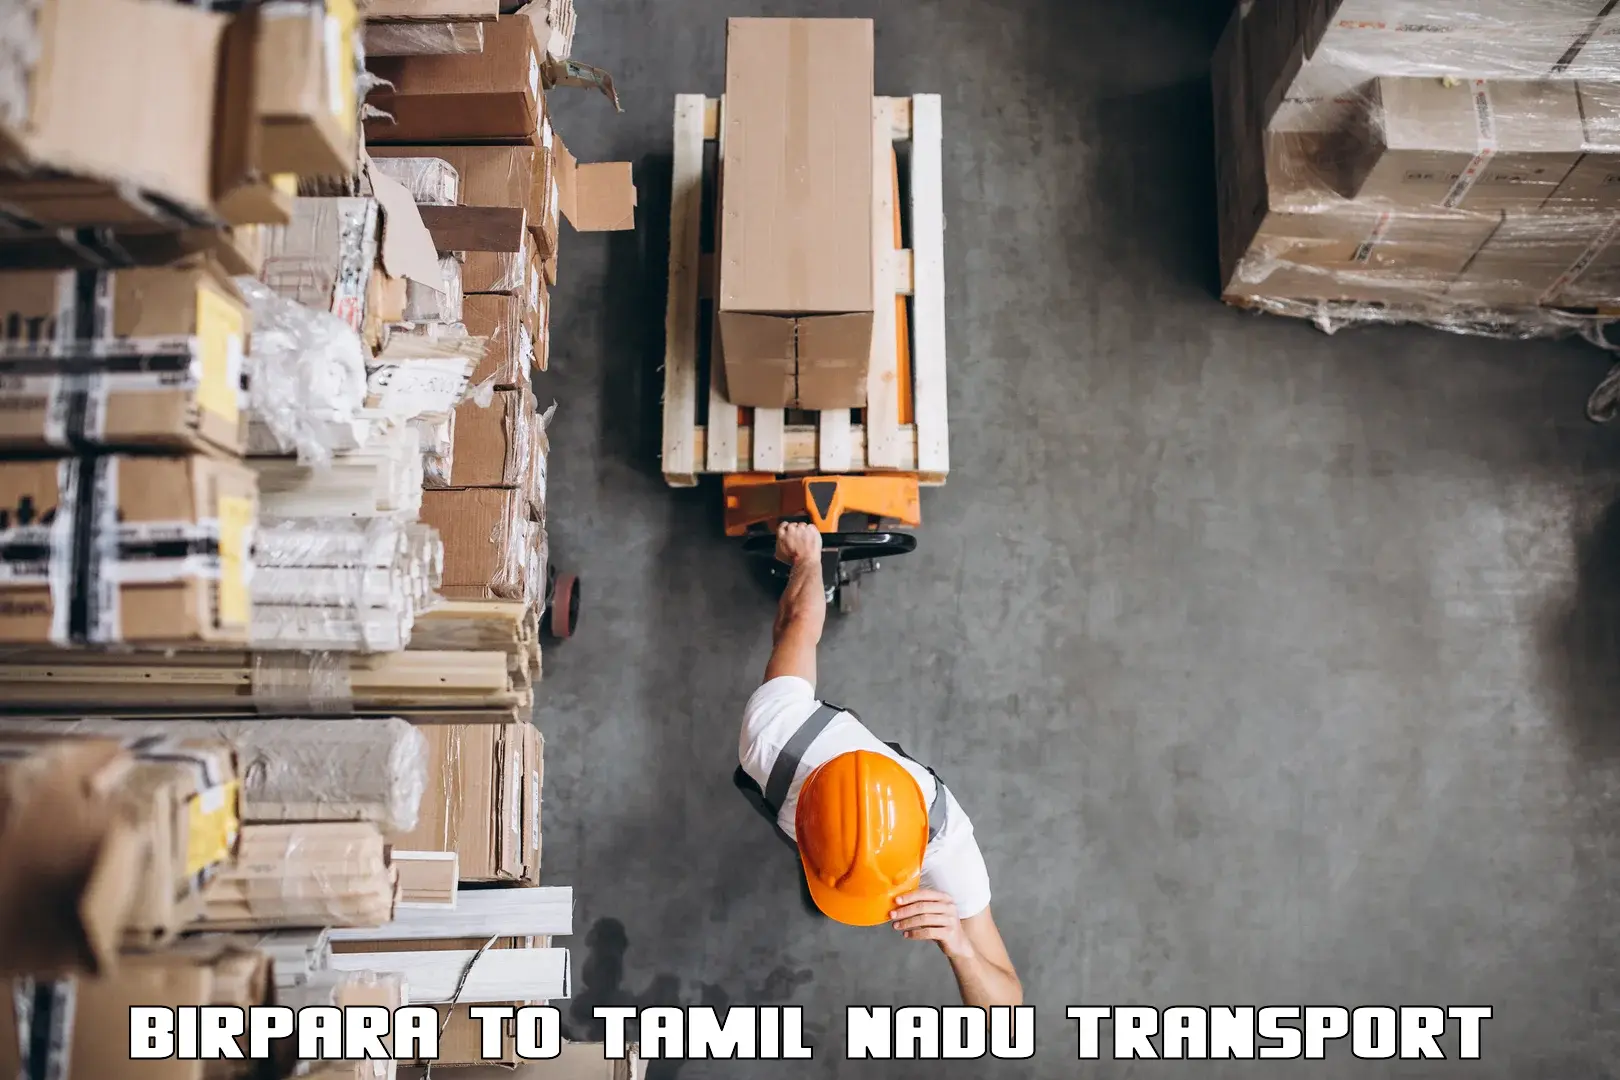 Truck transport companies in India Birpara to Parangimalai